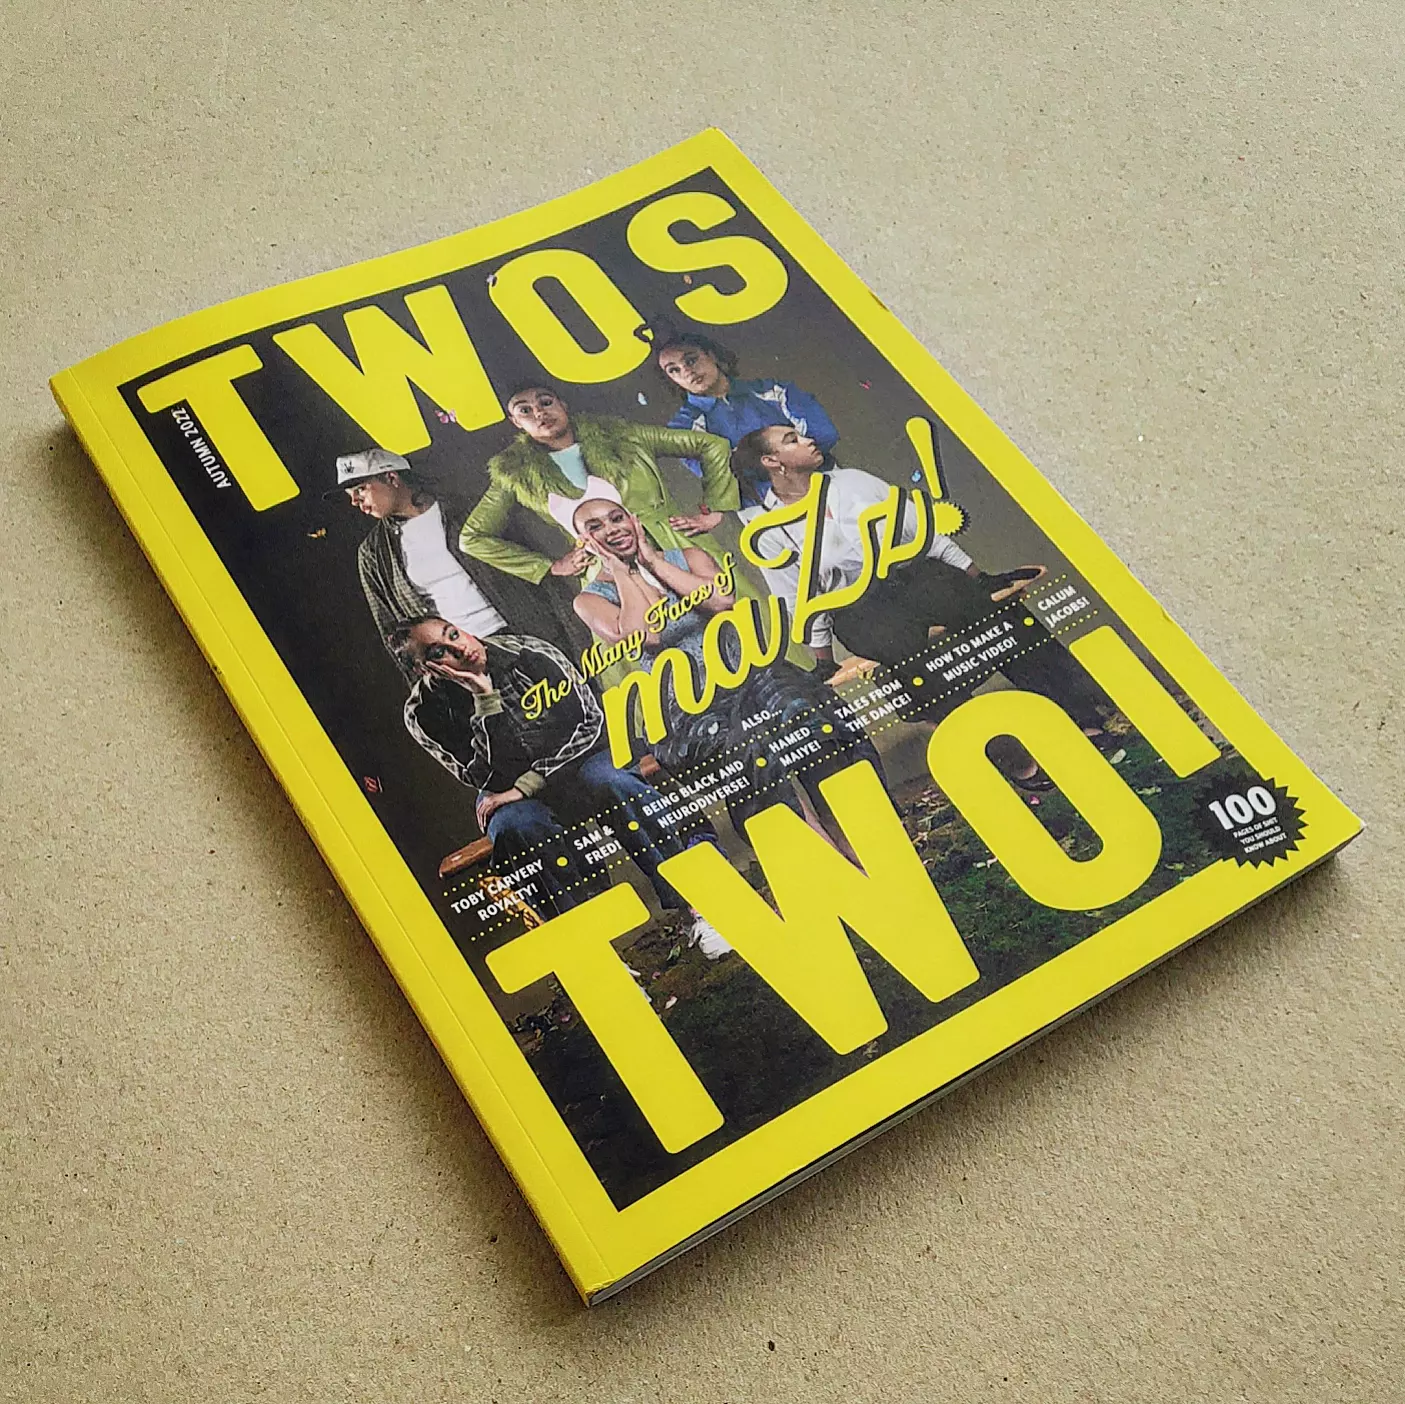 segunda edição da revista Twos Mag.